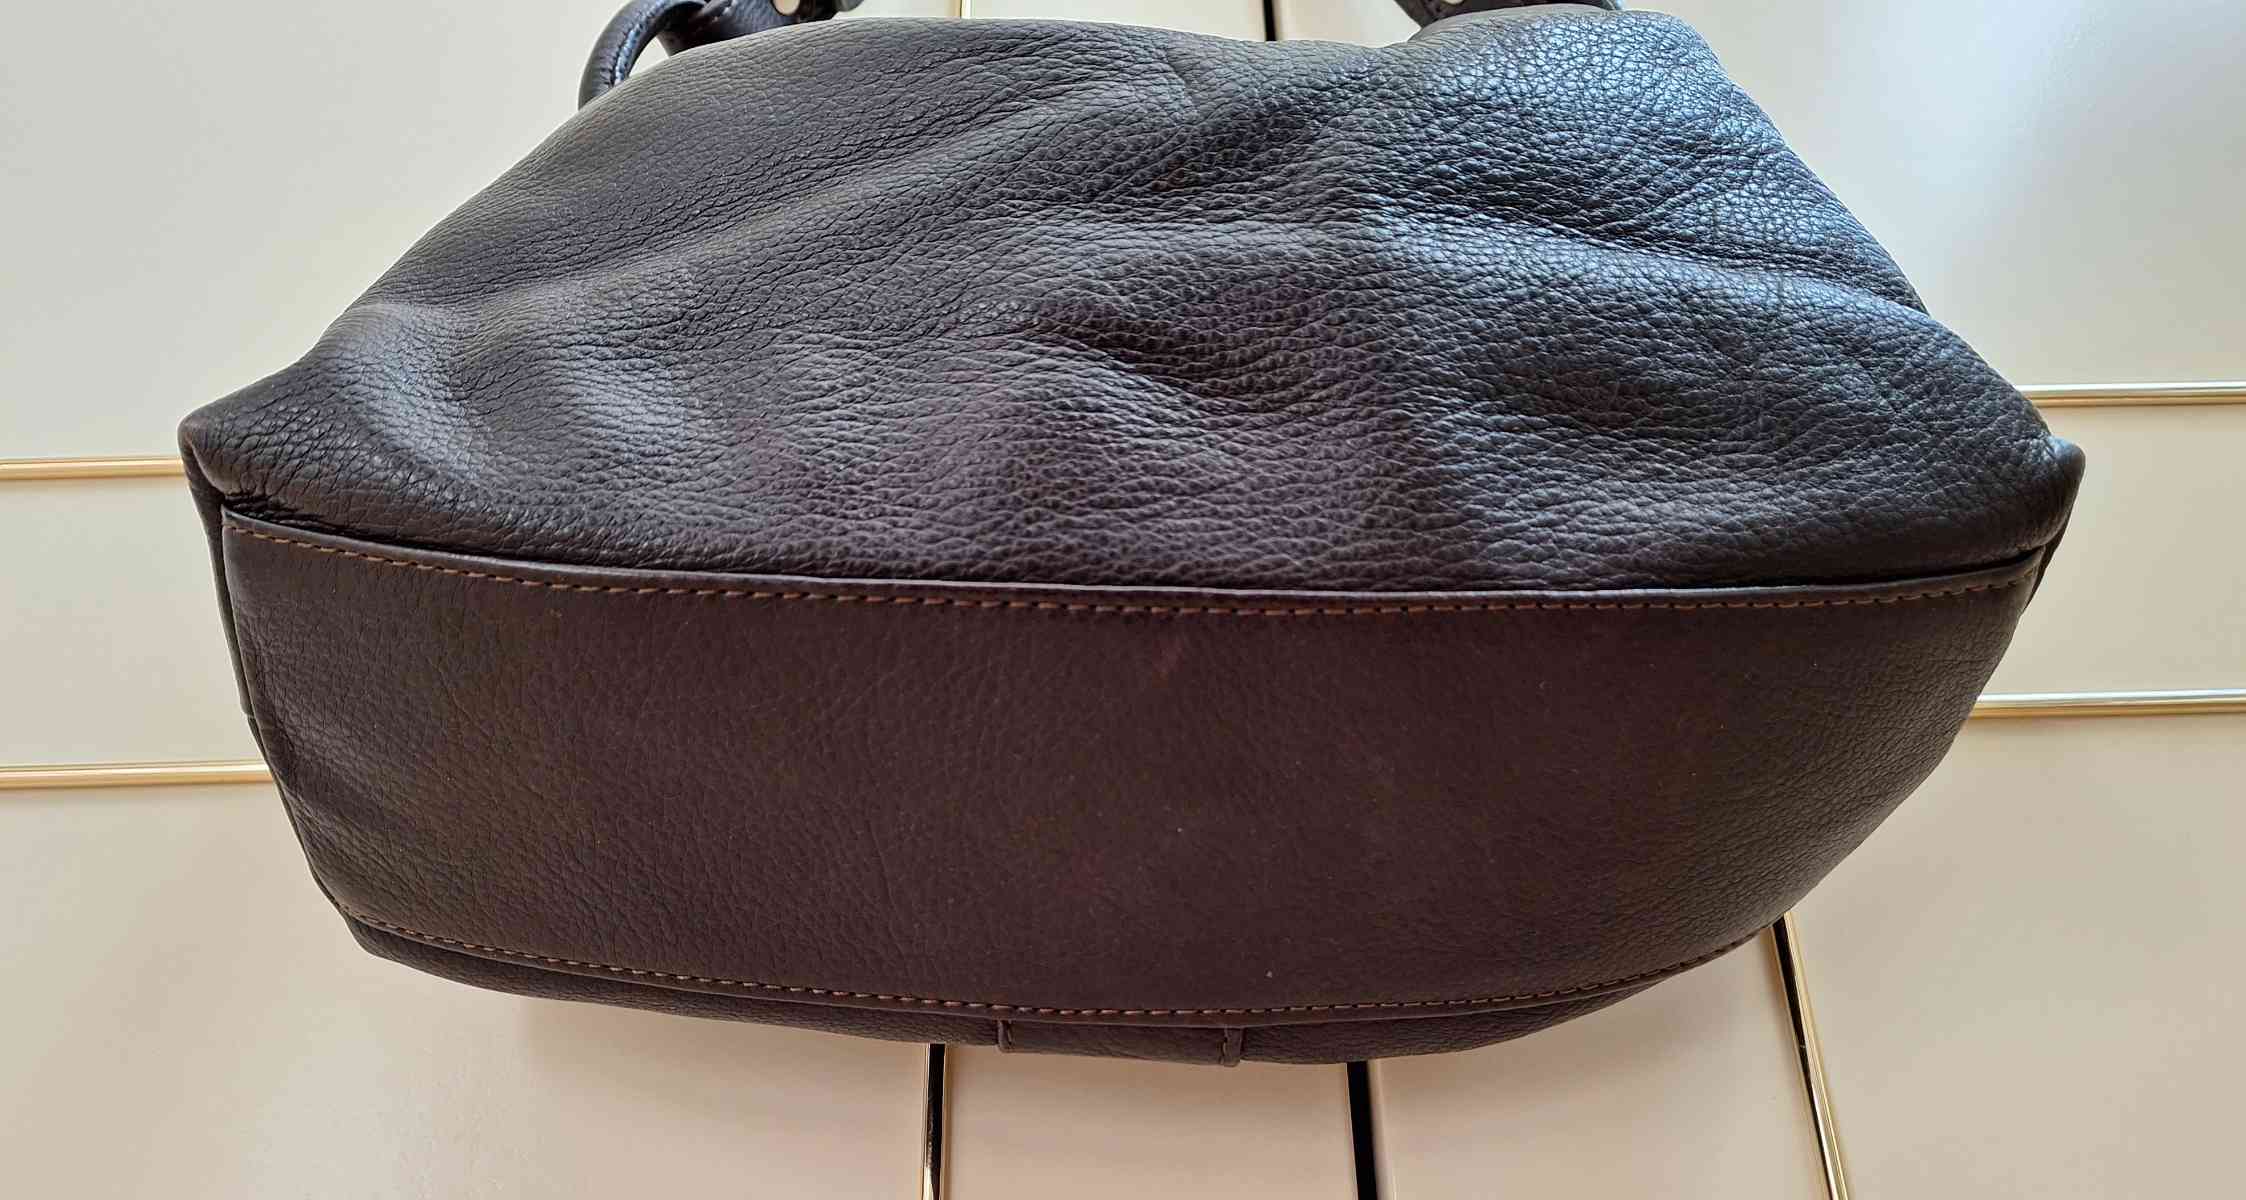 Calamita Handbag, in braun, Tragegurt längenverstellbar, Zustand sehr gut, von unten.